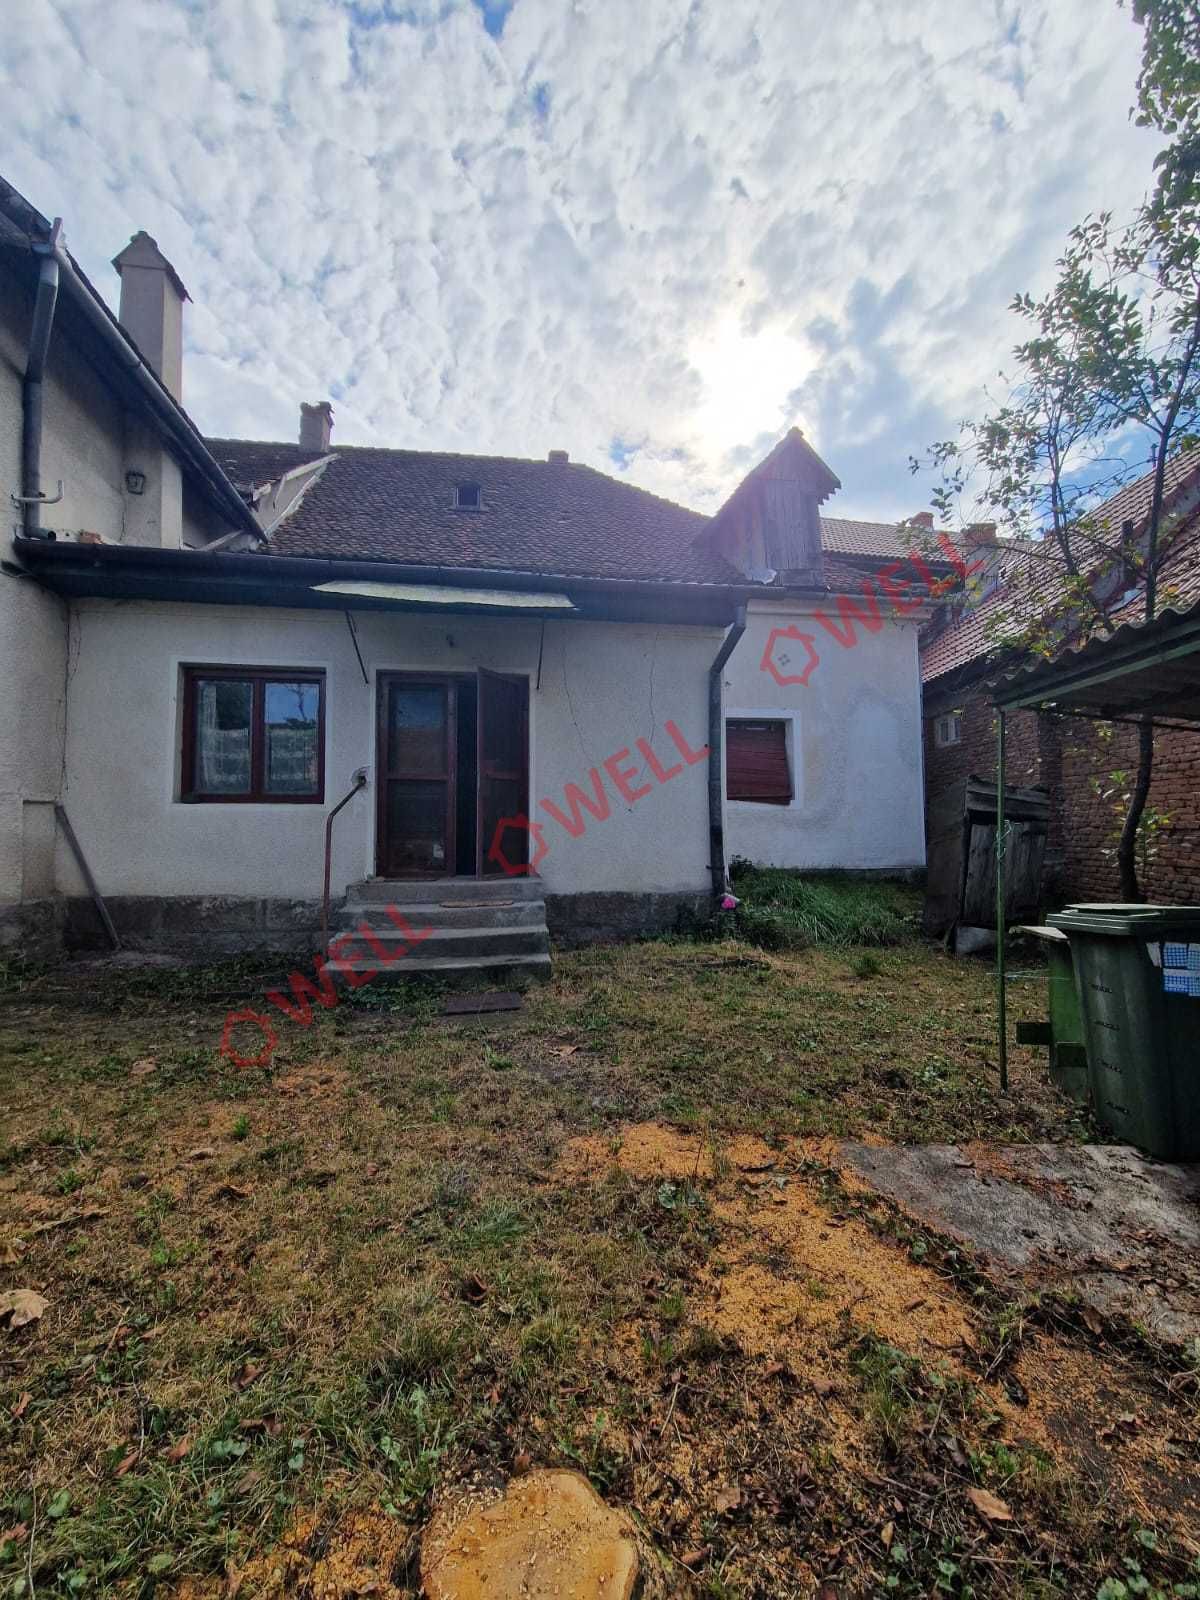 De vânzare casă familială în Tălișoara